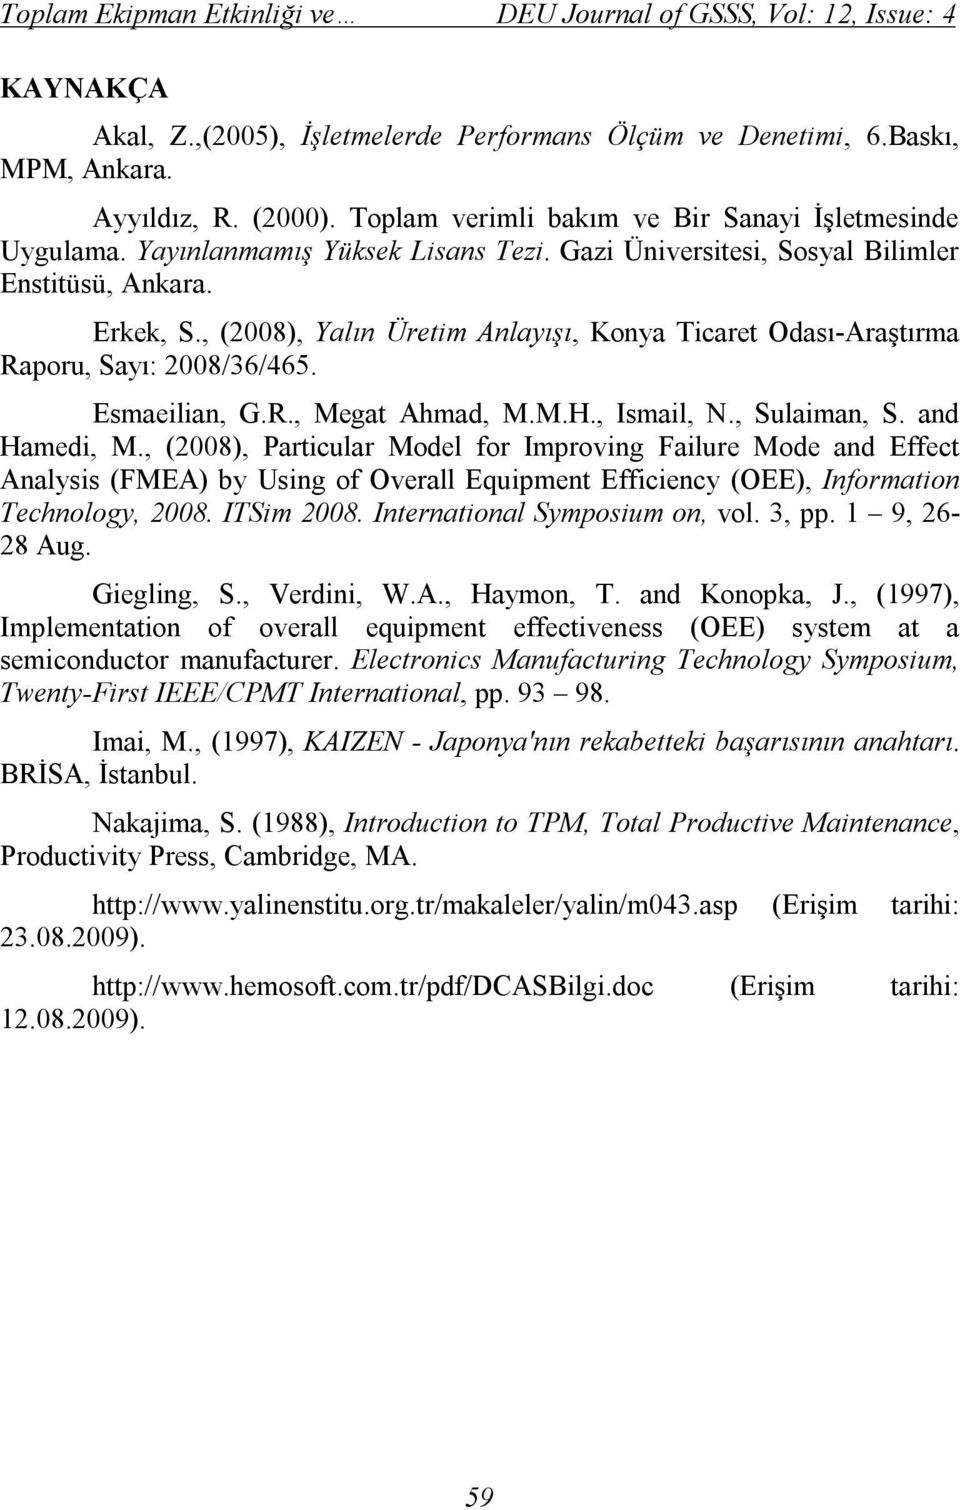 , (2008), Yalın Üretim Anlayışı, Konya Ticaret Odası-Araştırma Raporu, Sayı: 2008/36/465. Esmaeilian, G.R., Megat Ahmad, M.M.H., Ismail, N., Sulaiman, S. and Hamedi, M.